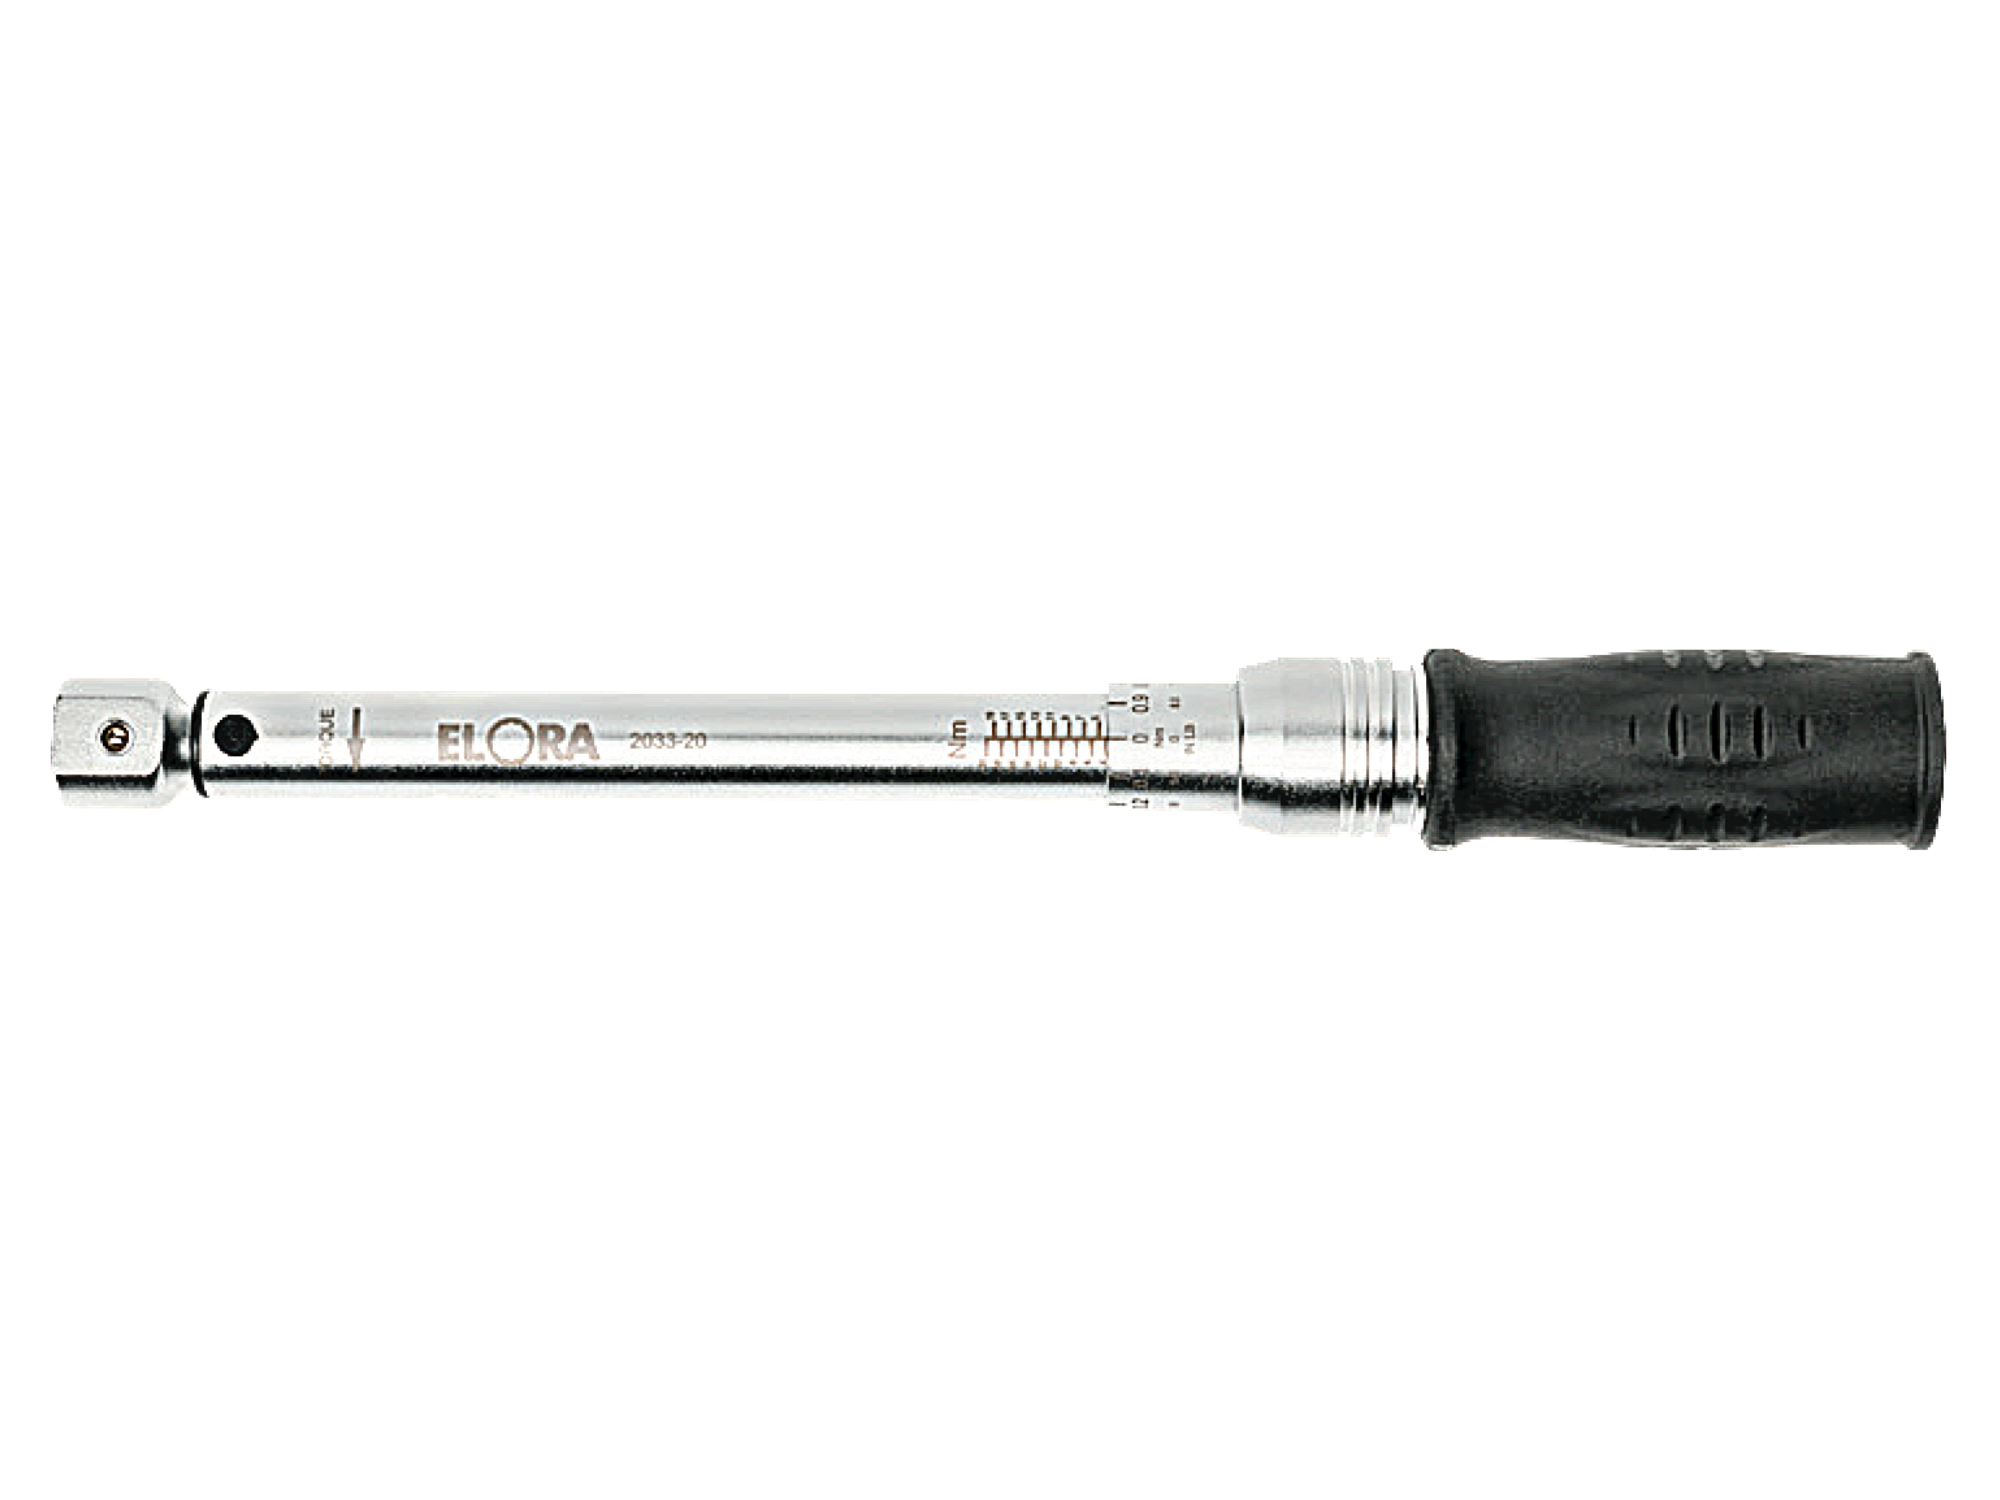 ELORA 2033-20 Torque Wrench With Rectangular Intake (ELORA Tools) - Premium Torque Wrench from ELORA - Shop now at Yew Aik.